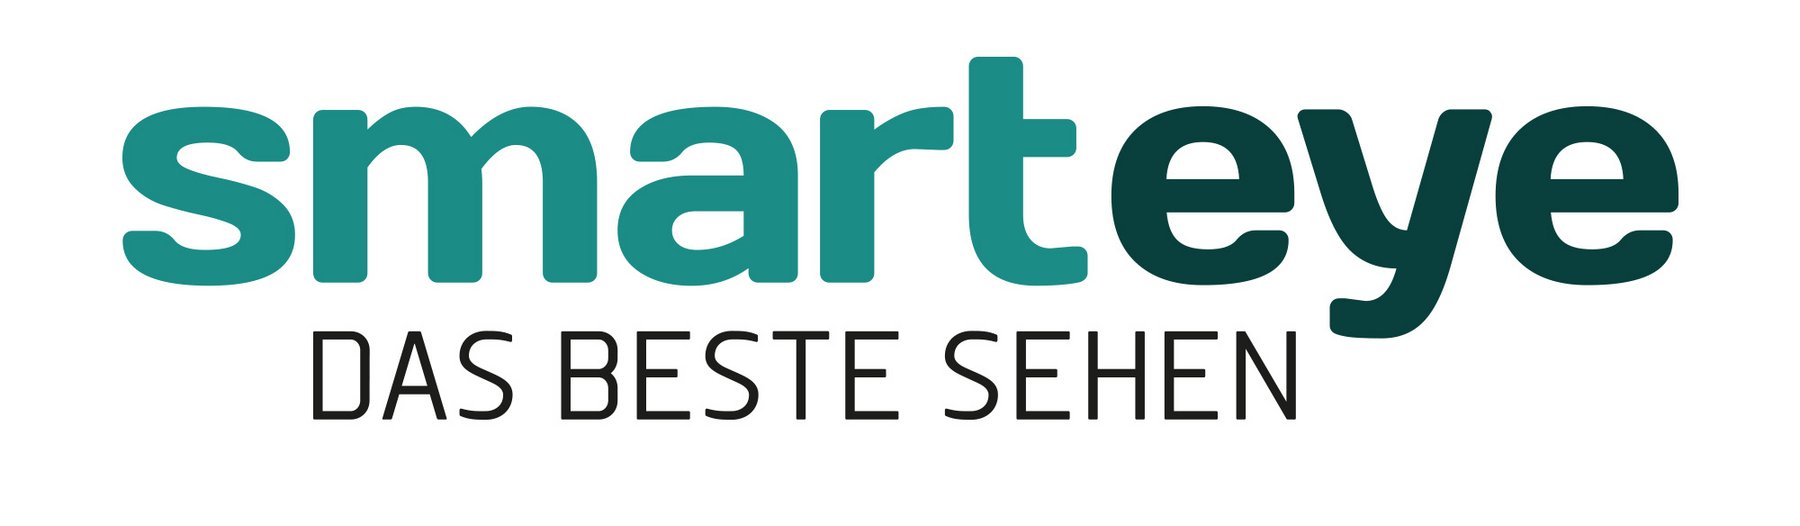 Smarteye Logo - eine Marke die Augenpartner